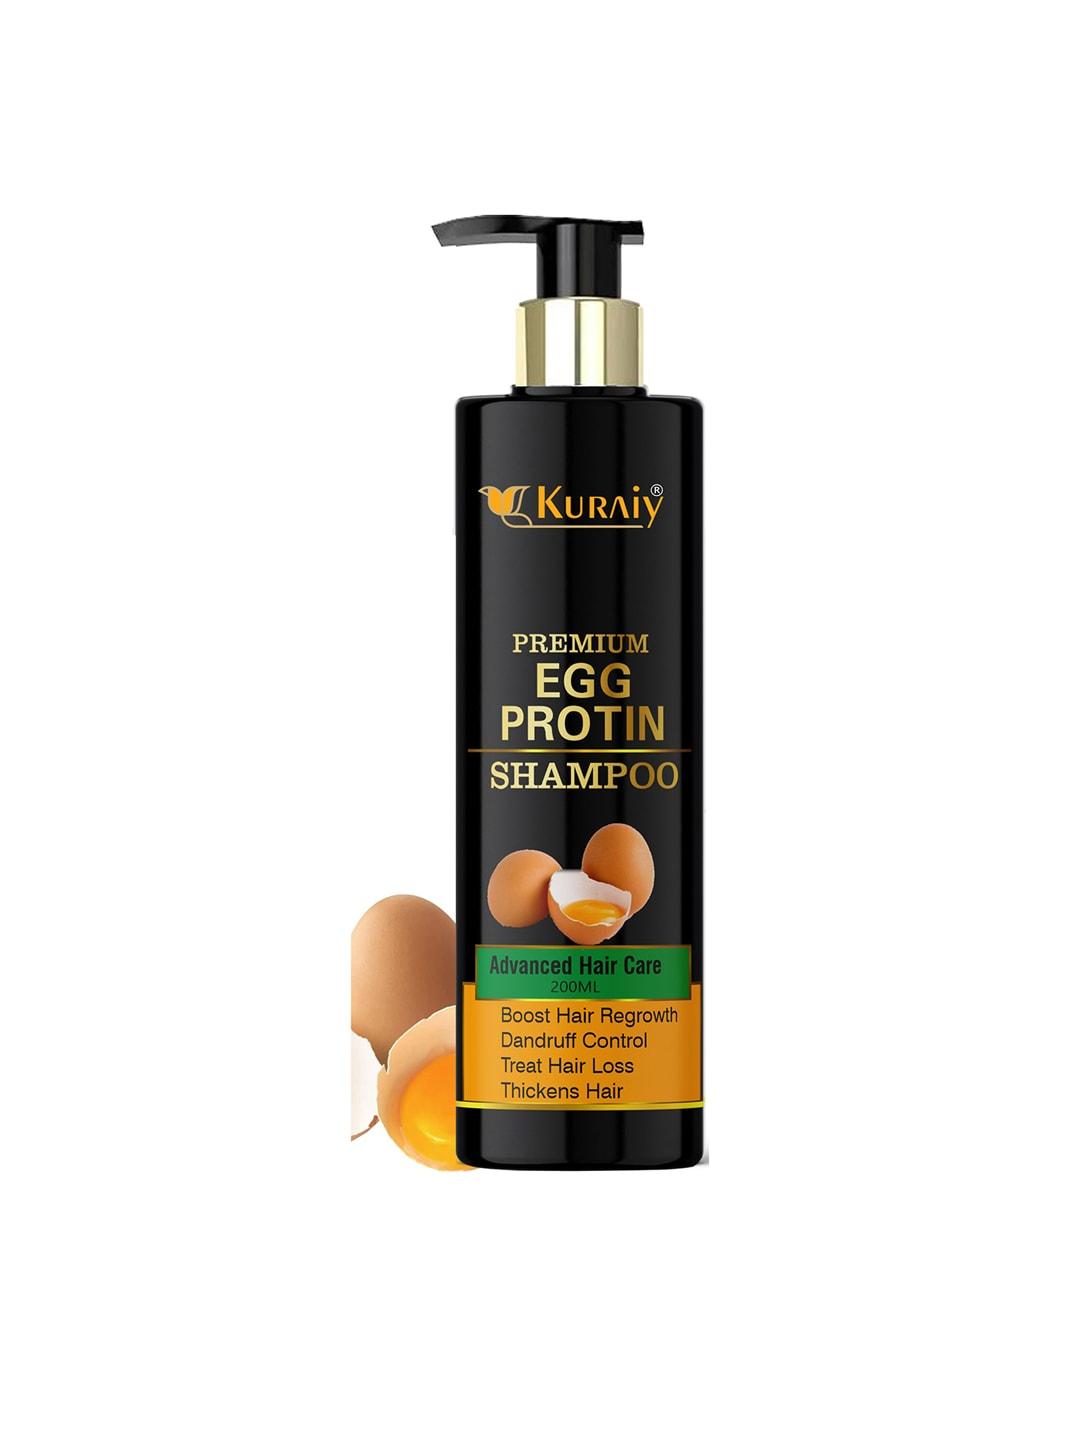 KURAIY Premium Advanced Hair Care Egg Protein Shampoo For Hair Regrowth - 200 ml